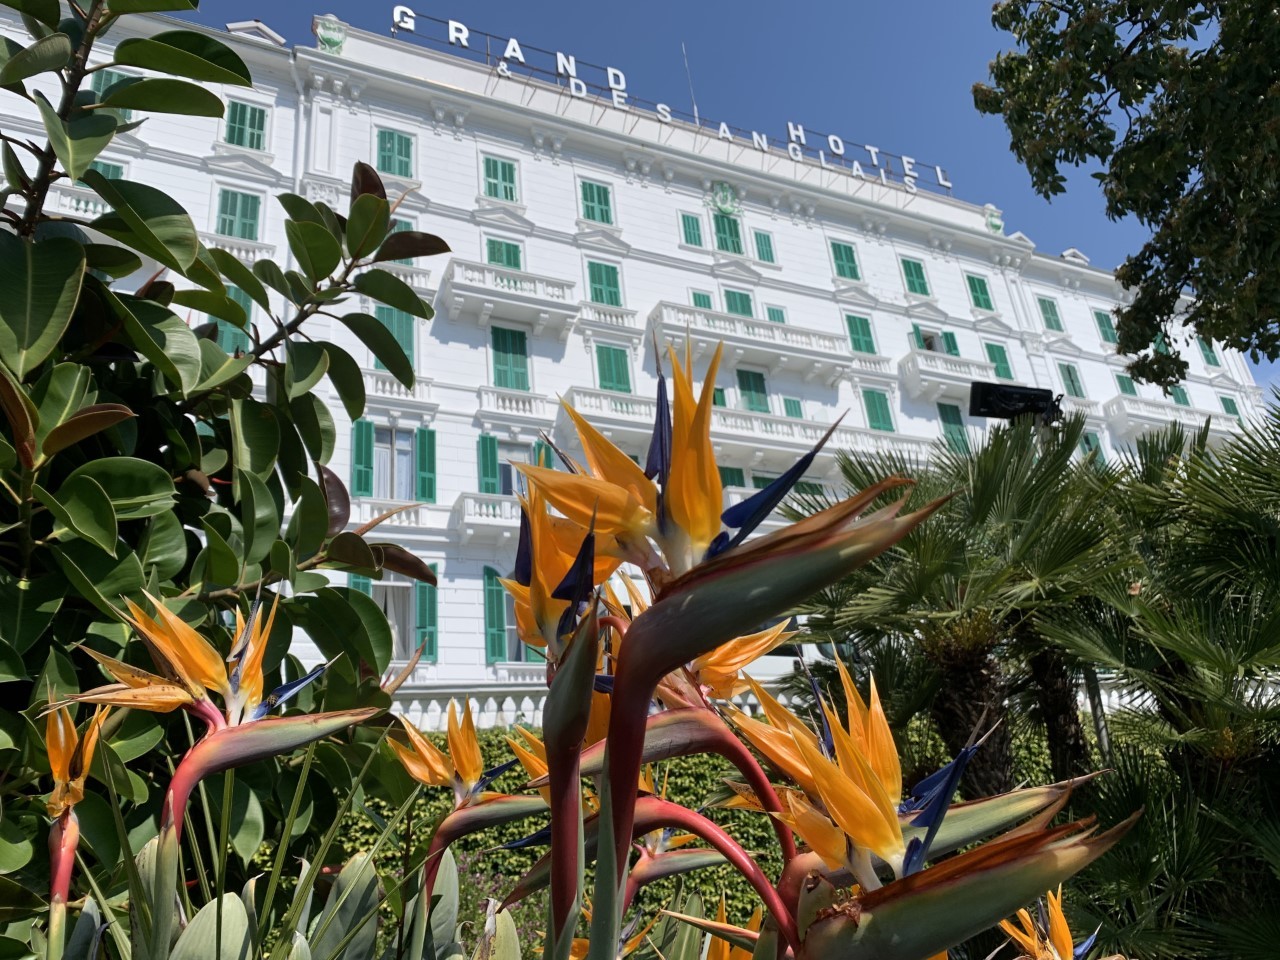  Nuova Validità! 2 giorni e 1 notte Pernottamento x 2 persone in camera doppia vista mare con prima colazione+ ingresso spa per 2 persone  al Grand Hotel & Des Anglais a Sanremo!